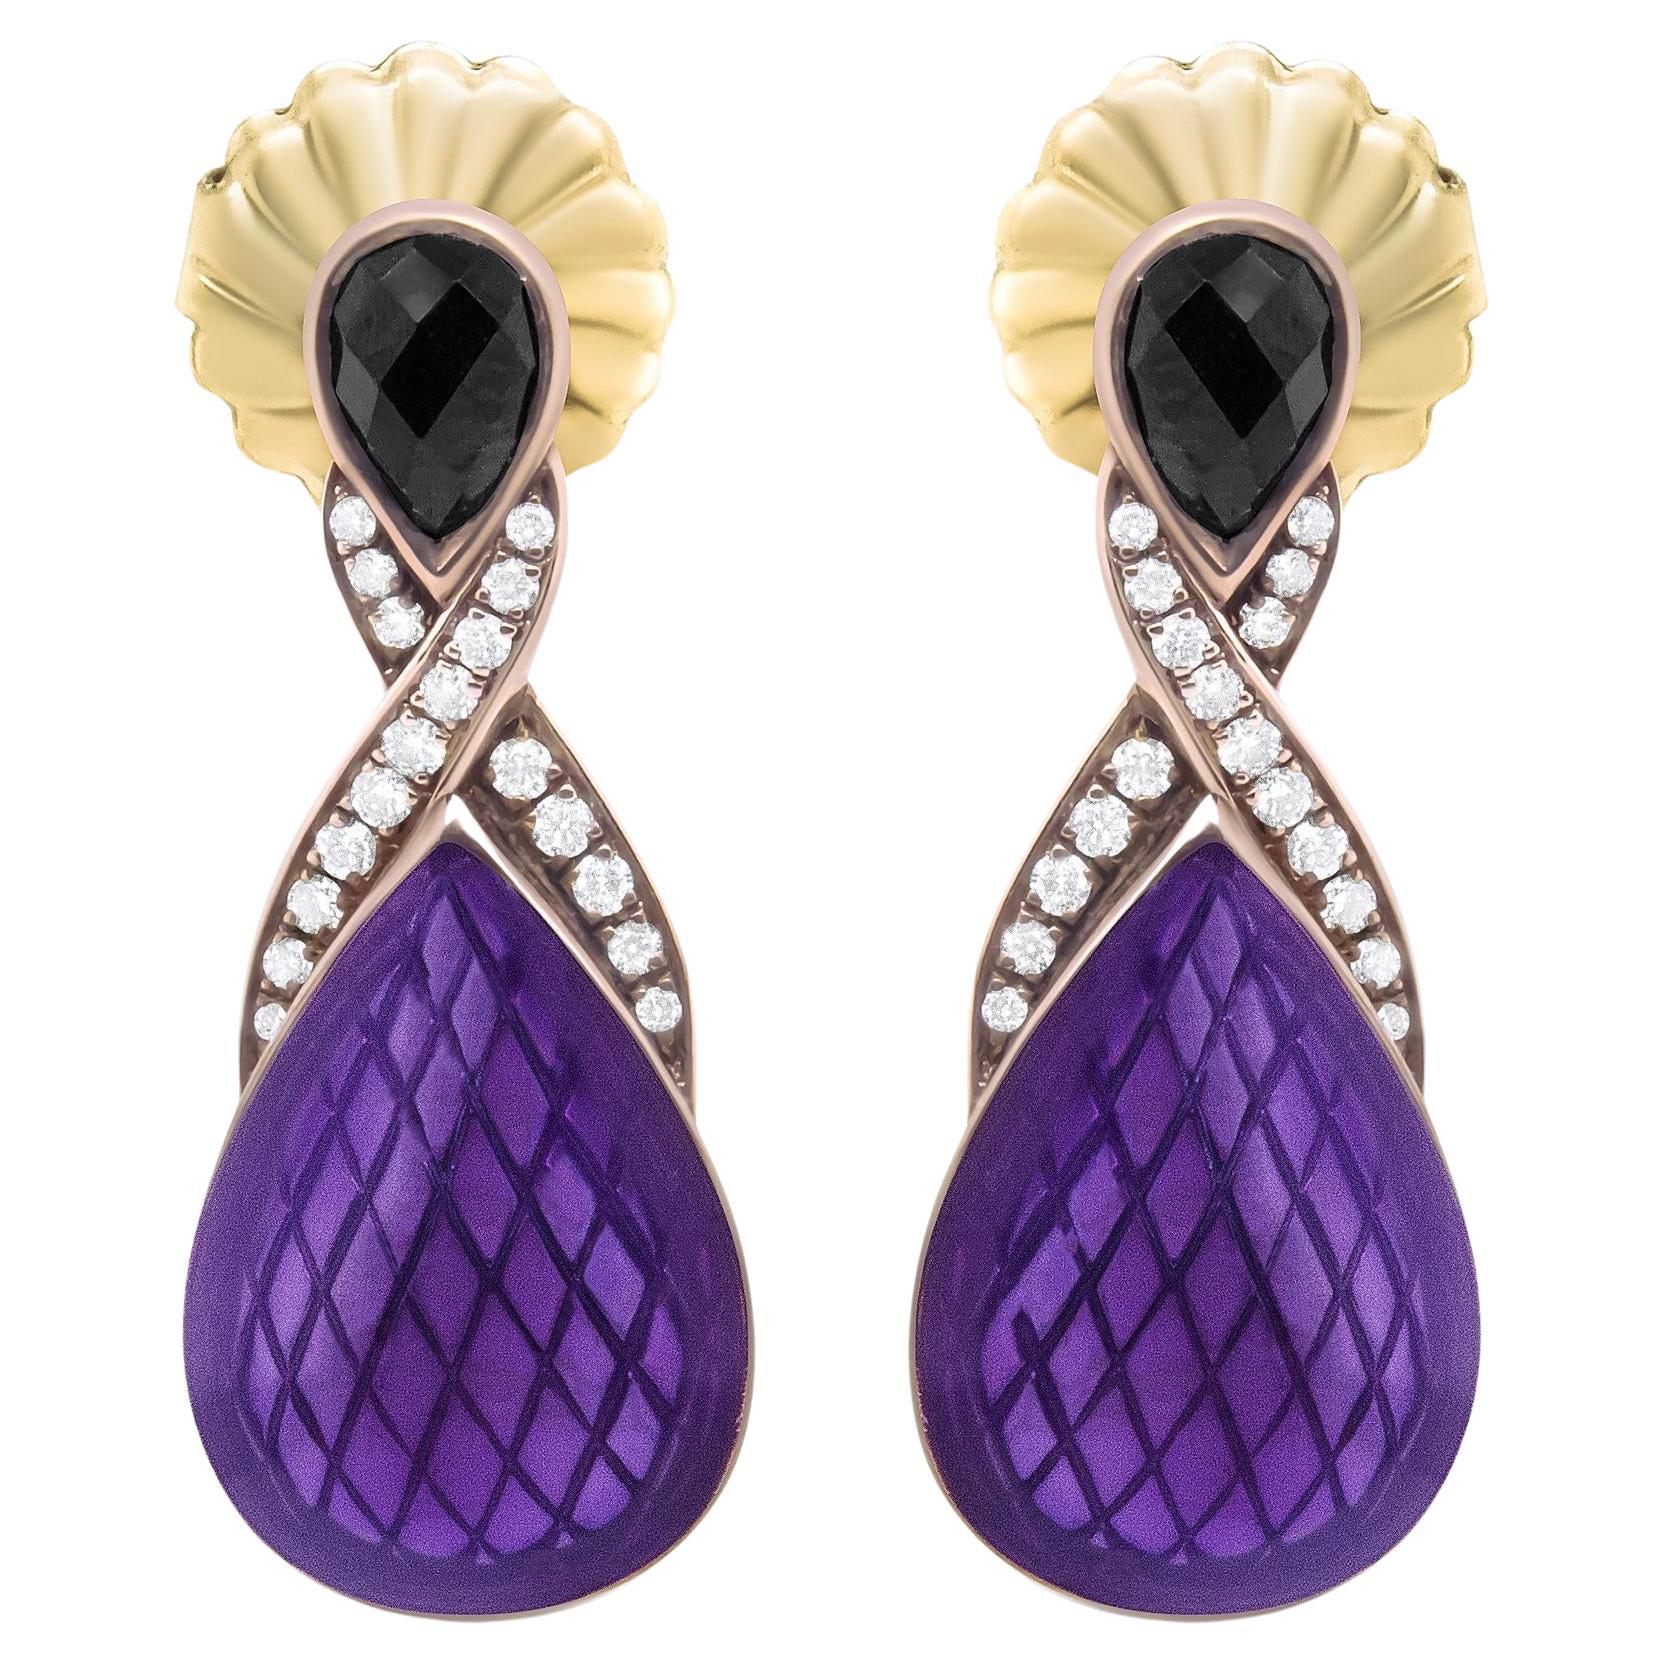 Purple Enamel Drop Earrings Diamonds and Onyx 18K Gold Plated